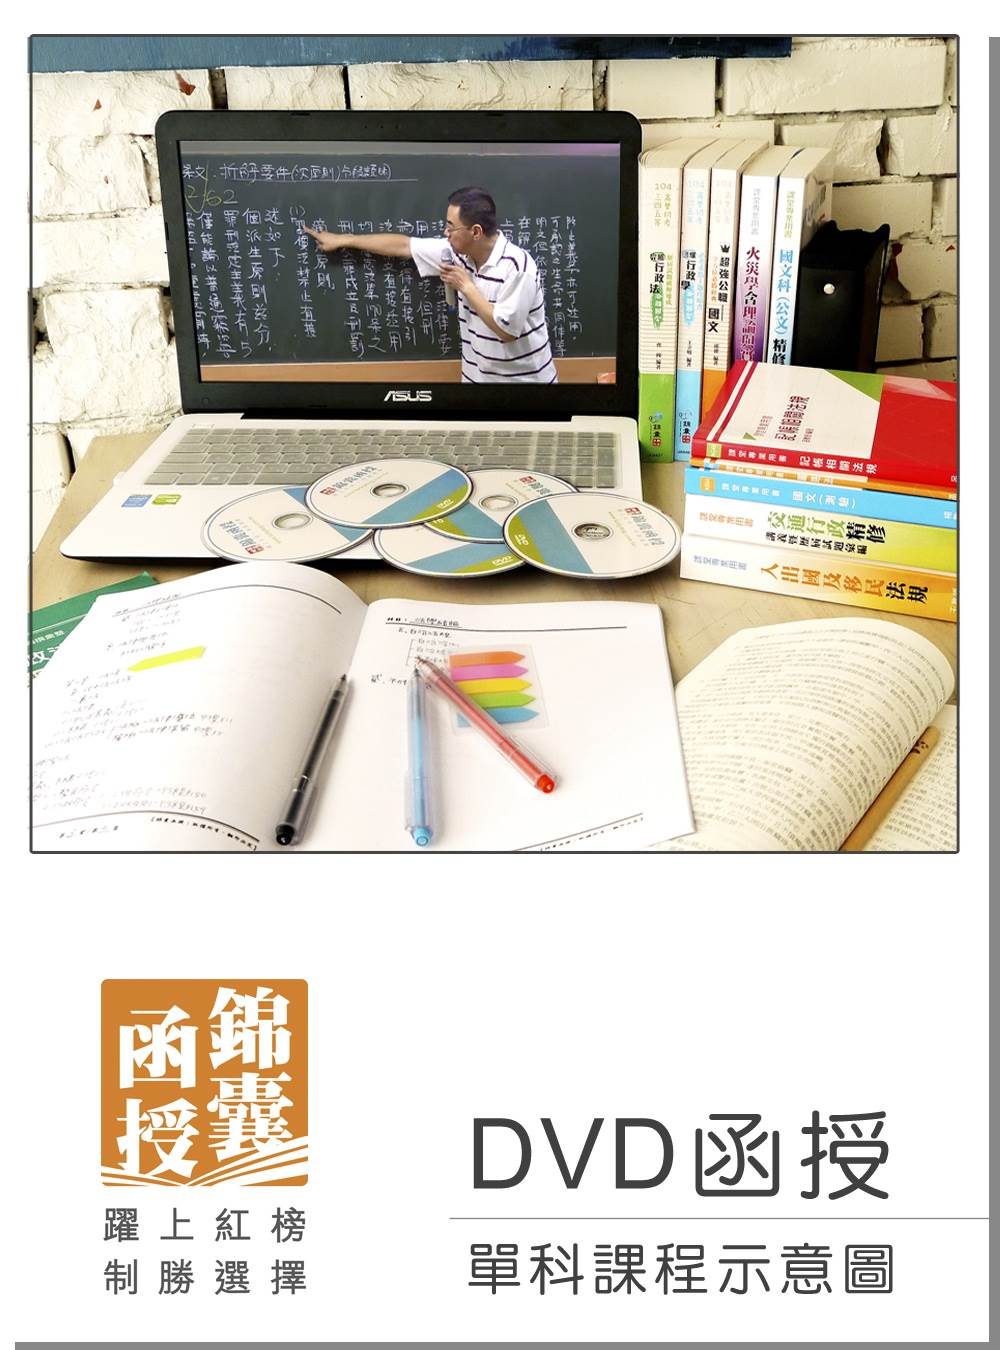 【DVD函授】地方自治-單科課程(105版)